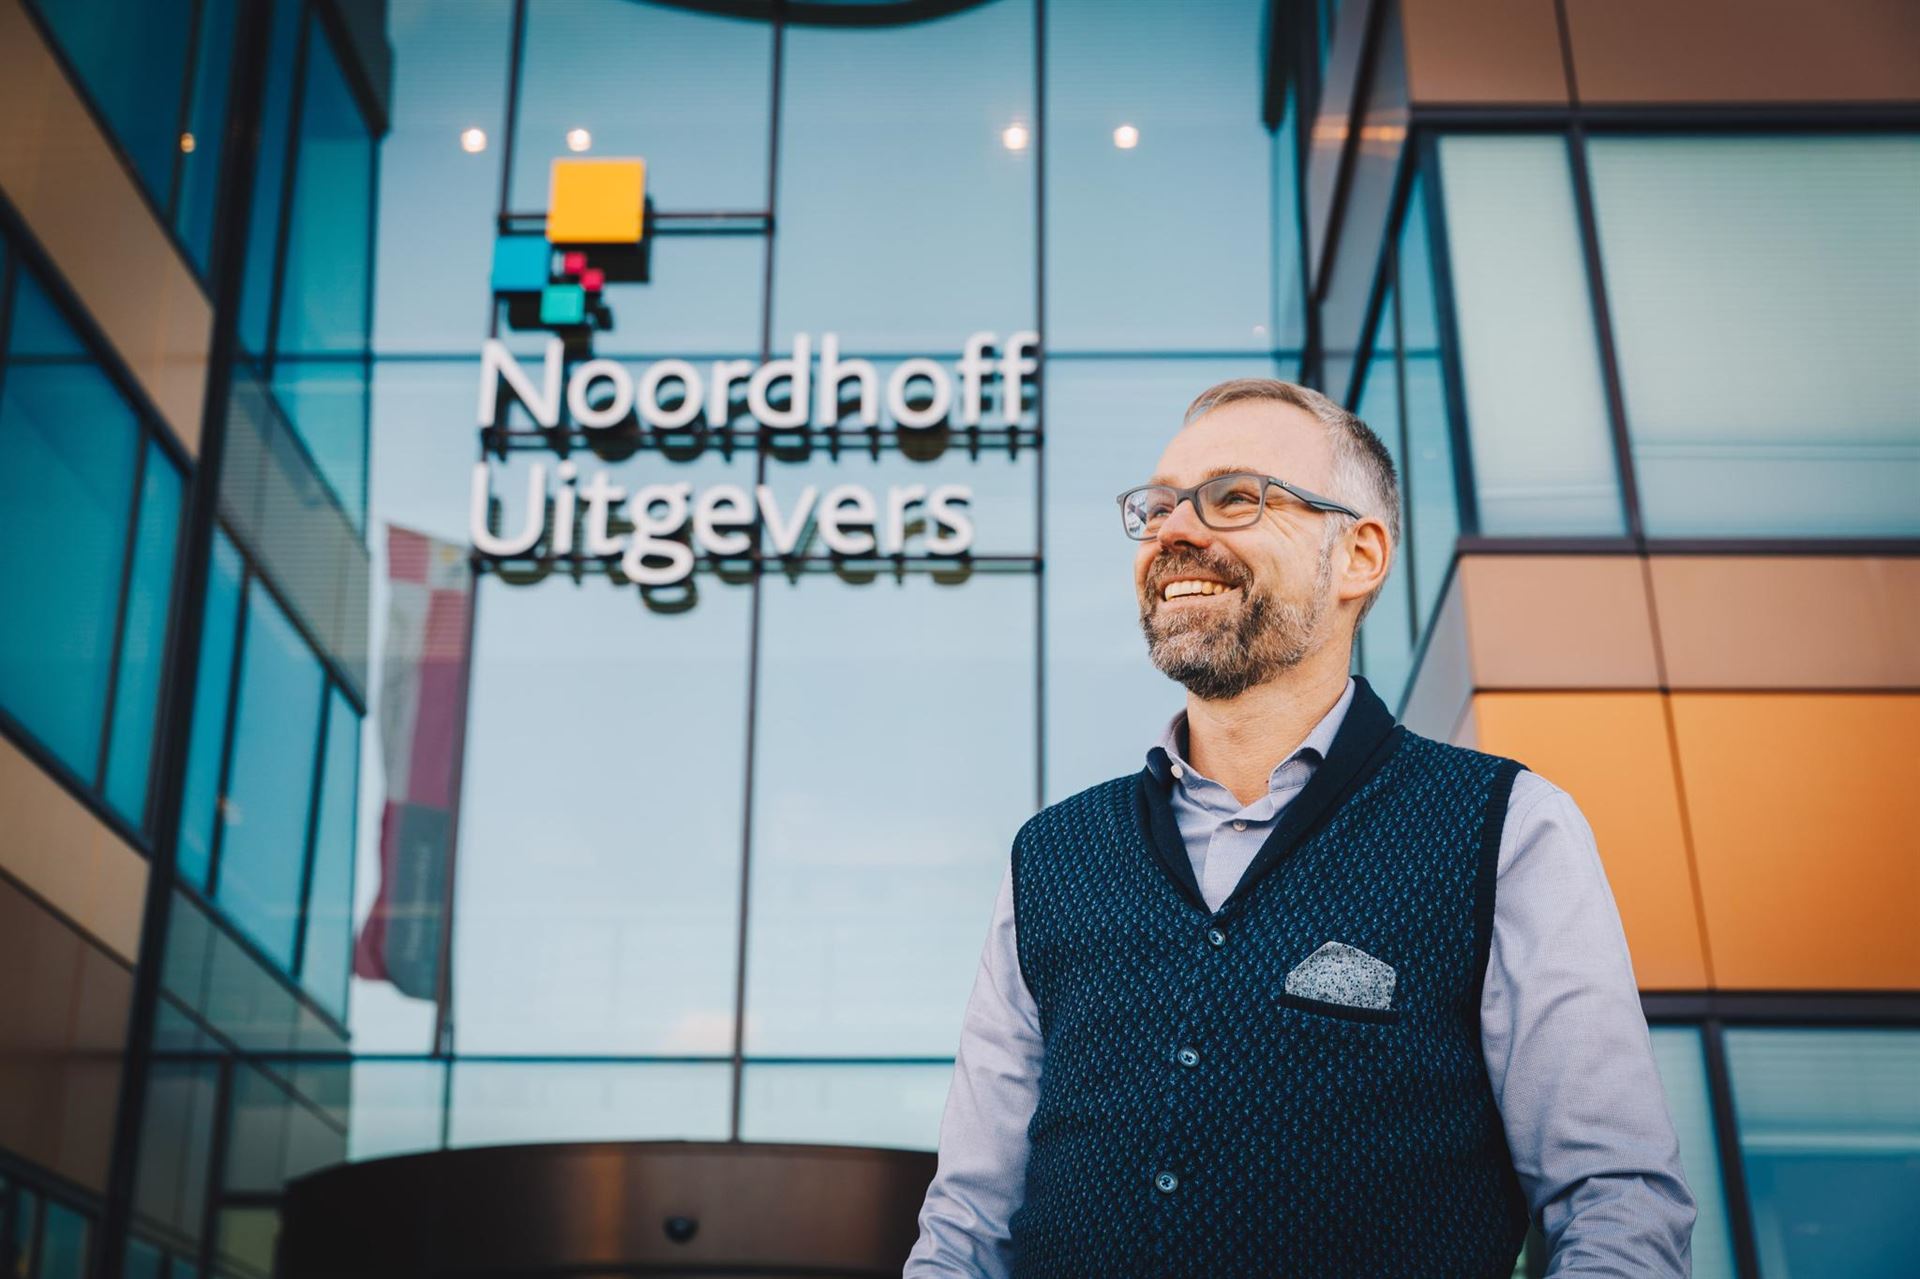 Sieger Kuik en la sede de la editorial Noordhoff, cliente de Payt